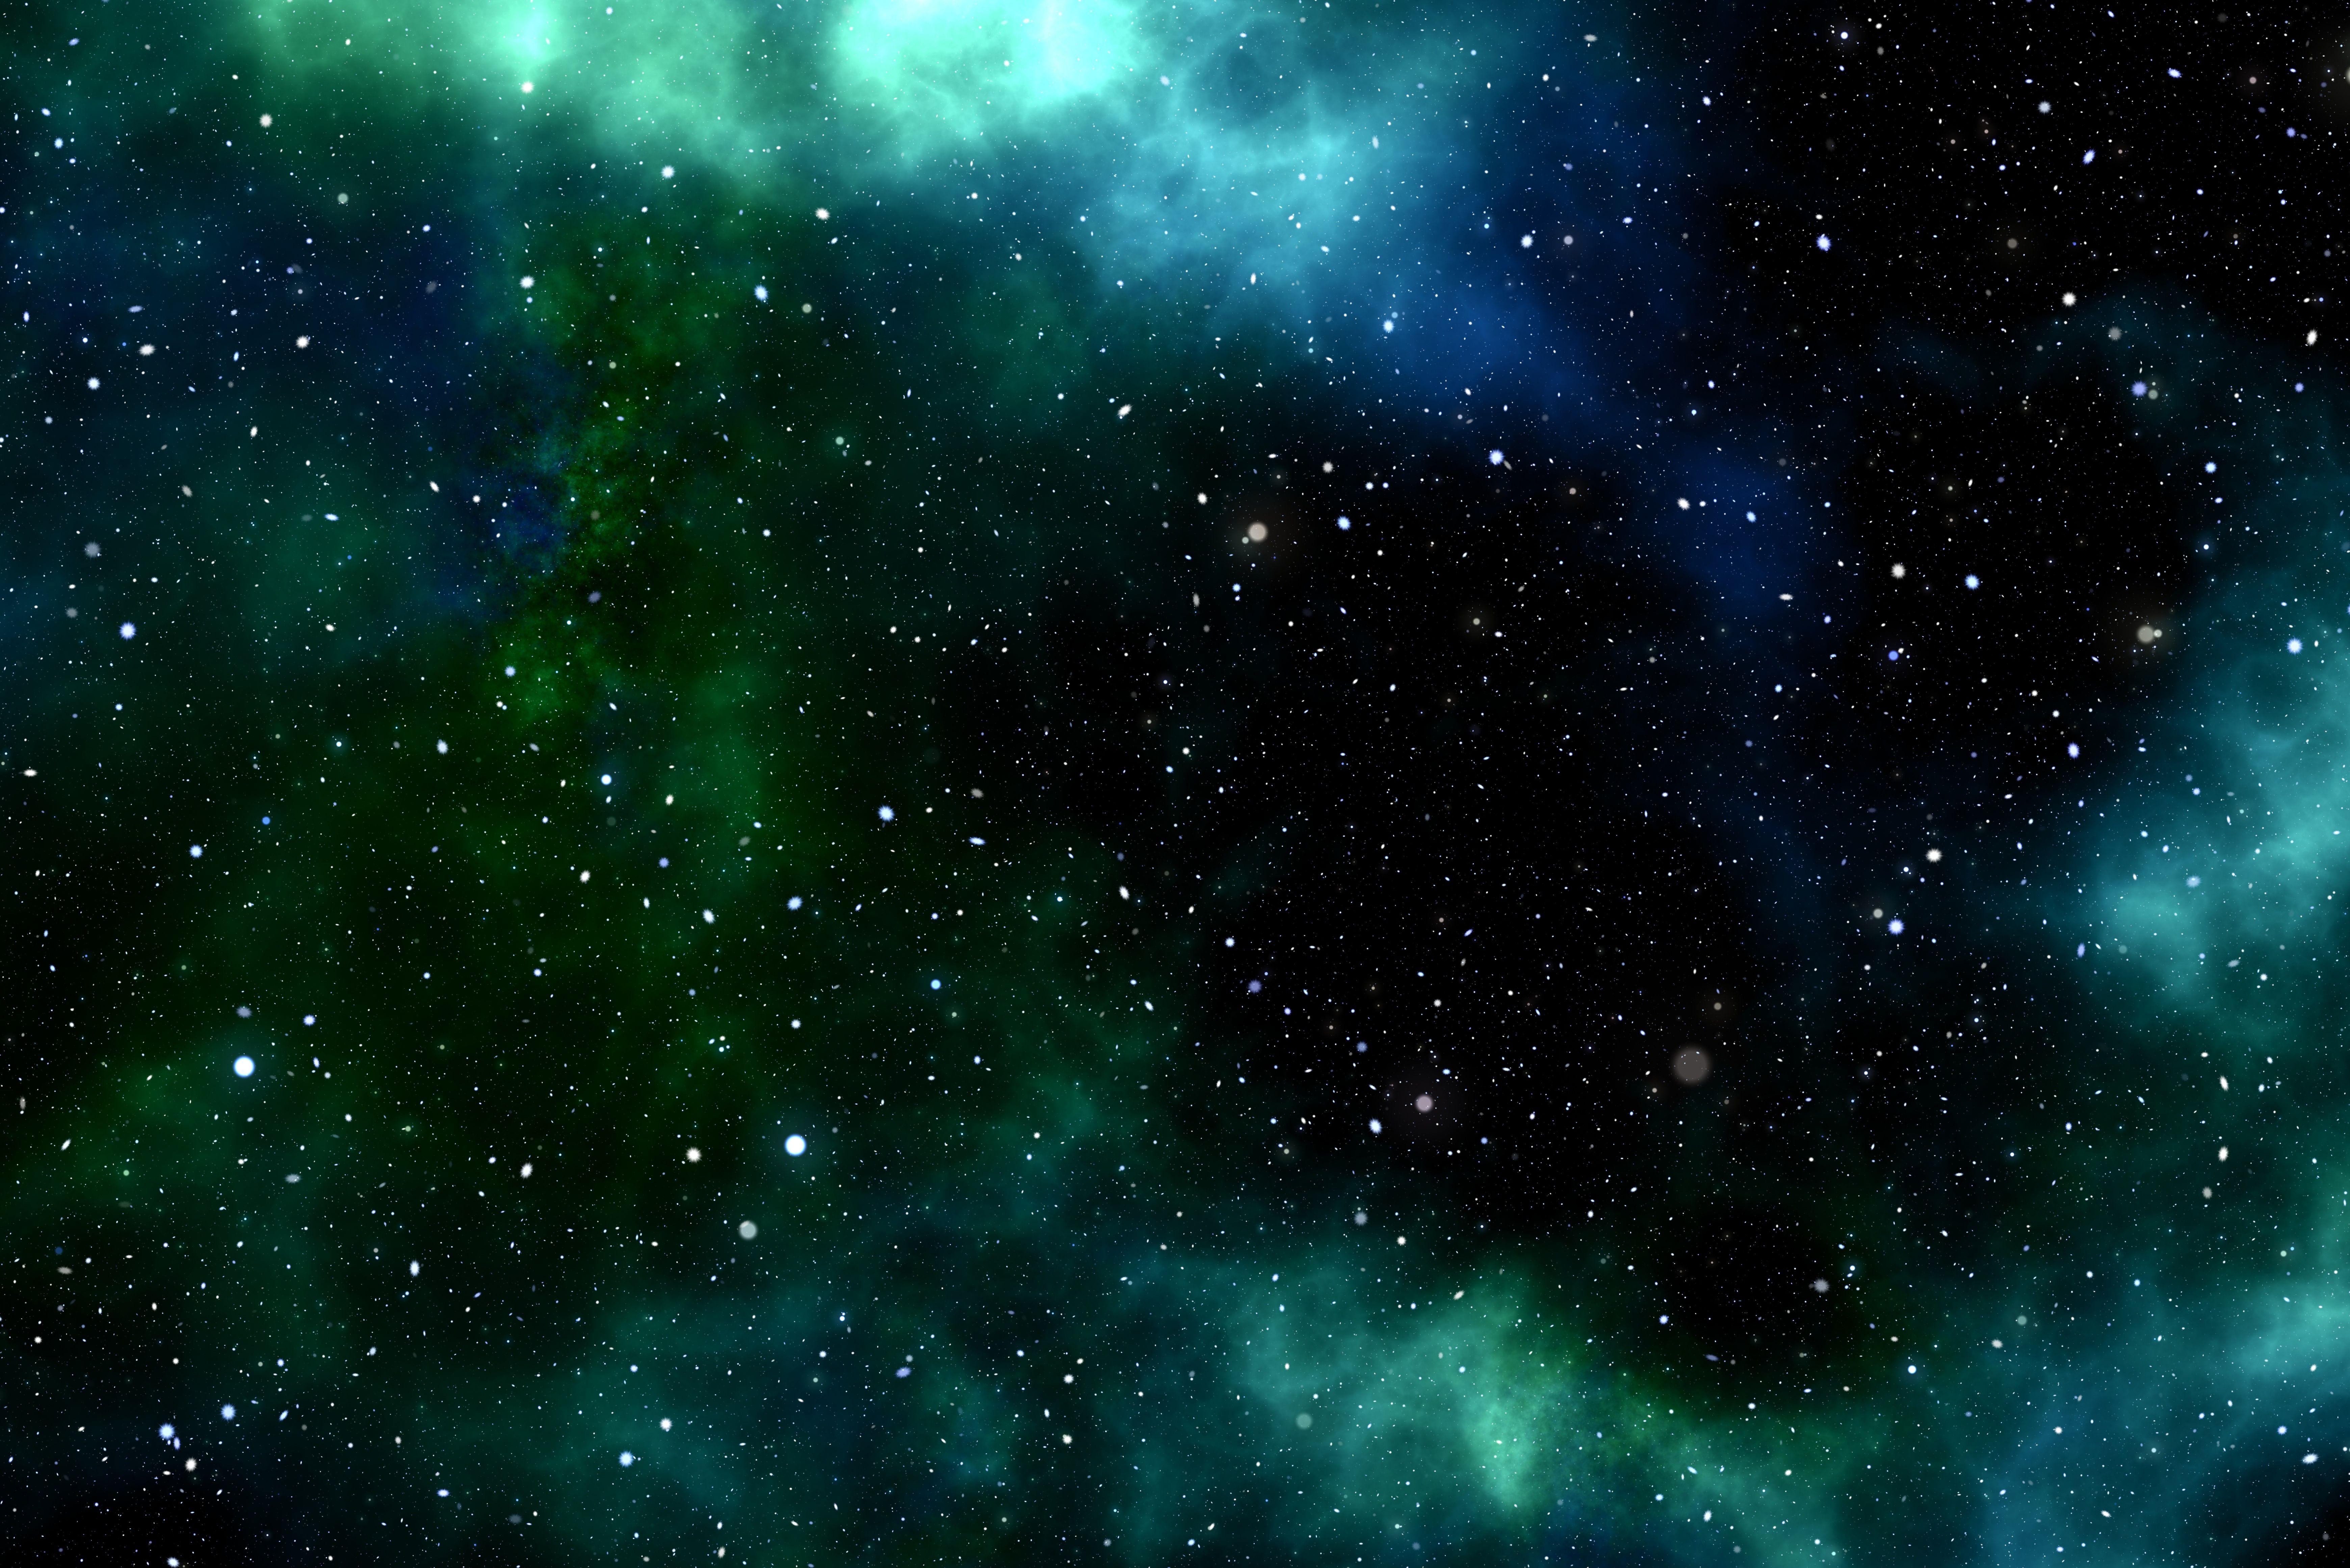 Green- Galaxy Background VIII by Stitchesss13 on DeviantArt